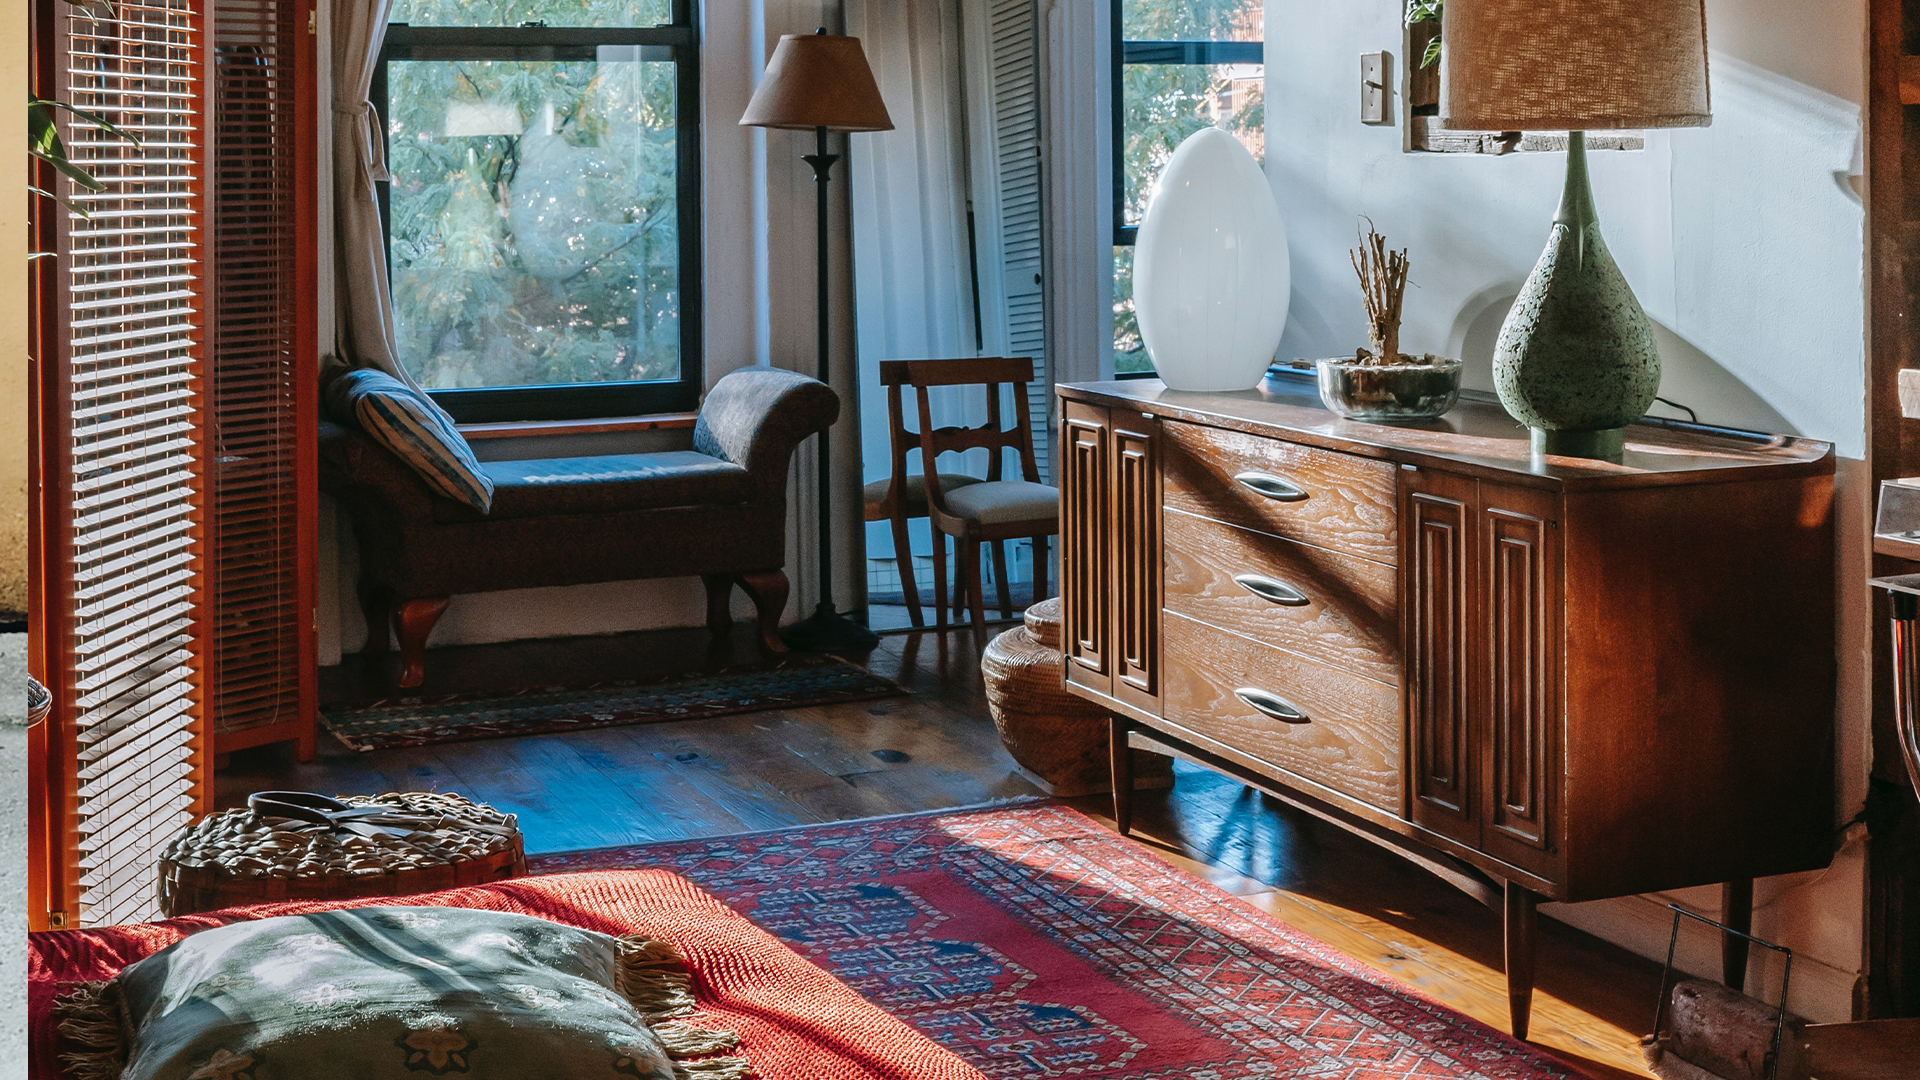 Kalmerend Guinness activering Vintage meubels zijn de populairste trend op interieurgebied - Vogue NL